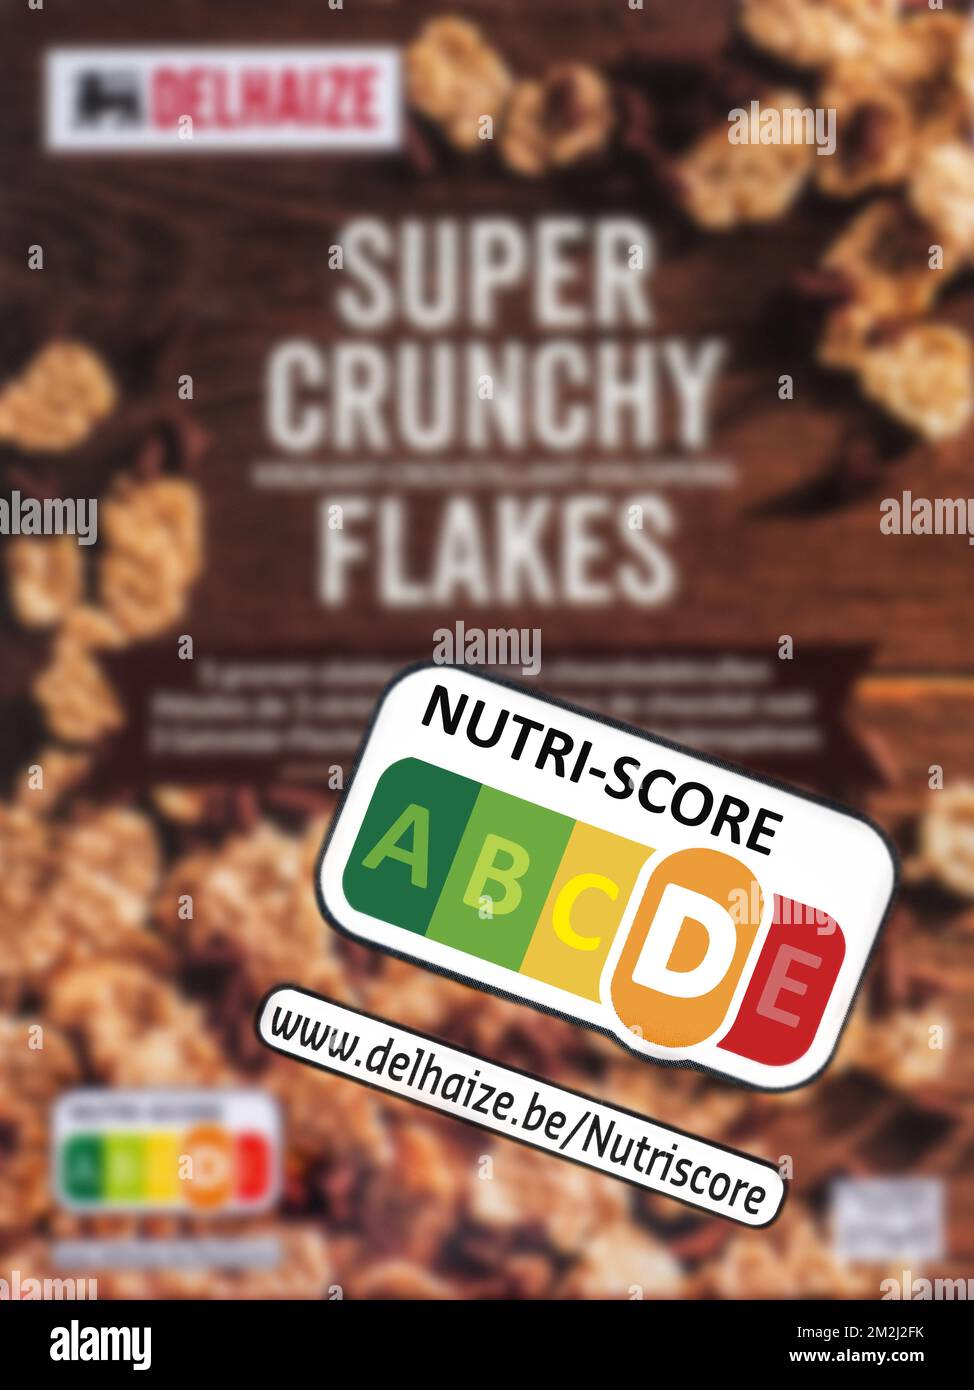 Nutritional label Nutri score on box of Belgian Delhaize Super Crunchy Flakes | Nutri-score, indicateur sur emballage alimentaire, appréciation de la qualité nutritionnelle du produit 23/08/2018 Stock Photo